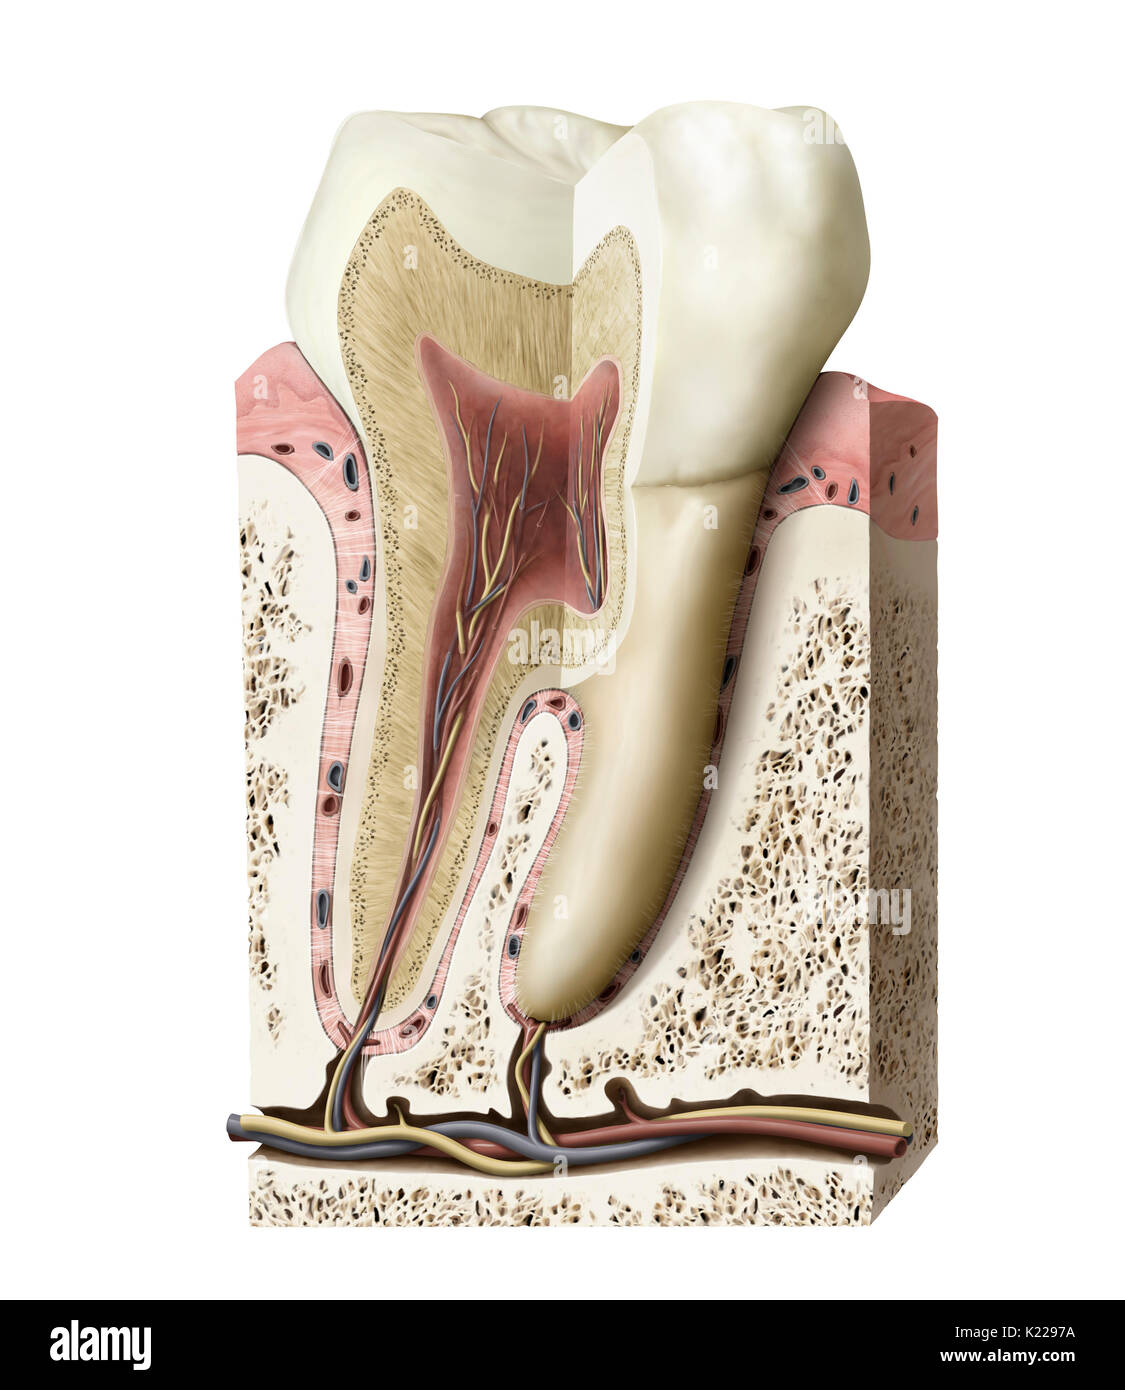 Les dents sont formées de deux parties principales : la couronne (la partie protubérante visibles) et plusieurs racines (la partie insérée dans la mâchoire supérieure ou inférieure). Banque D'Images